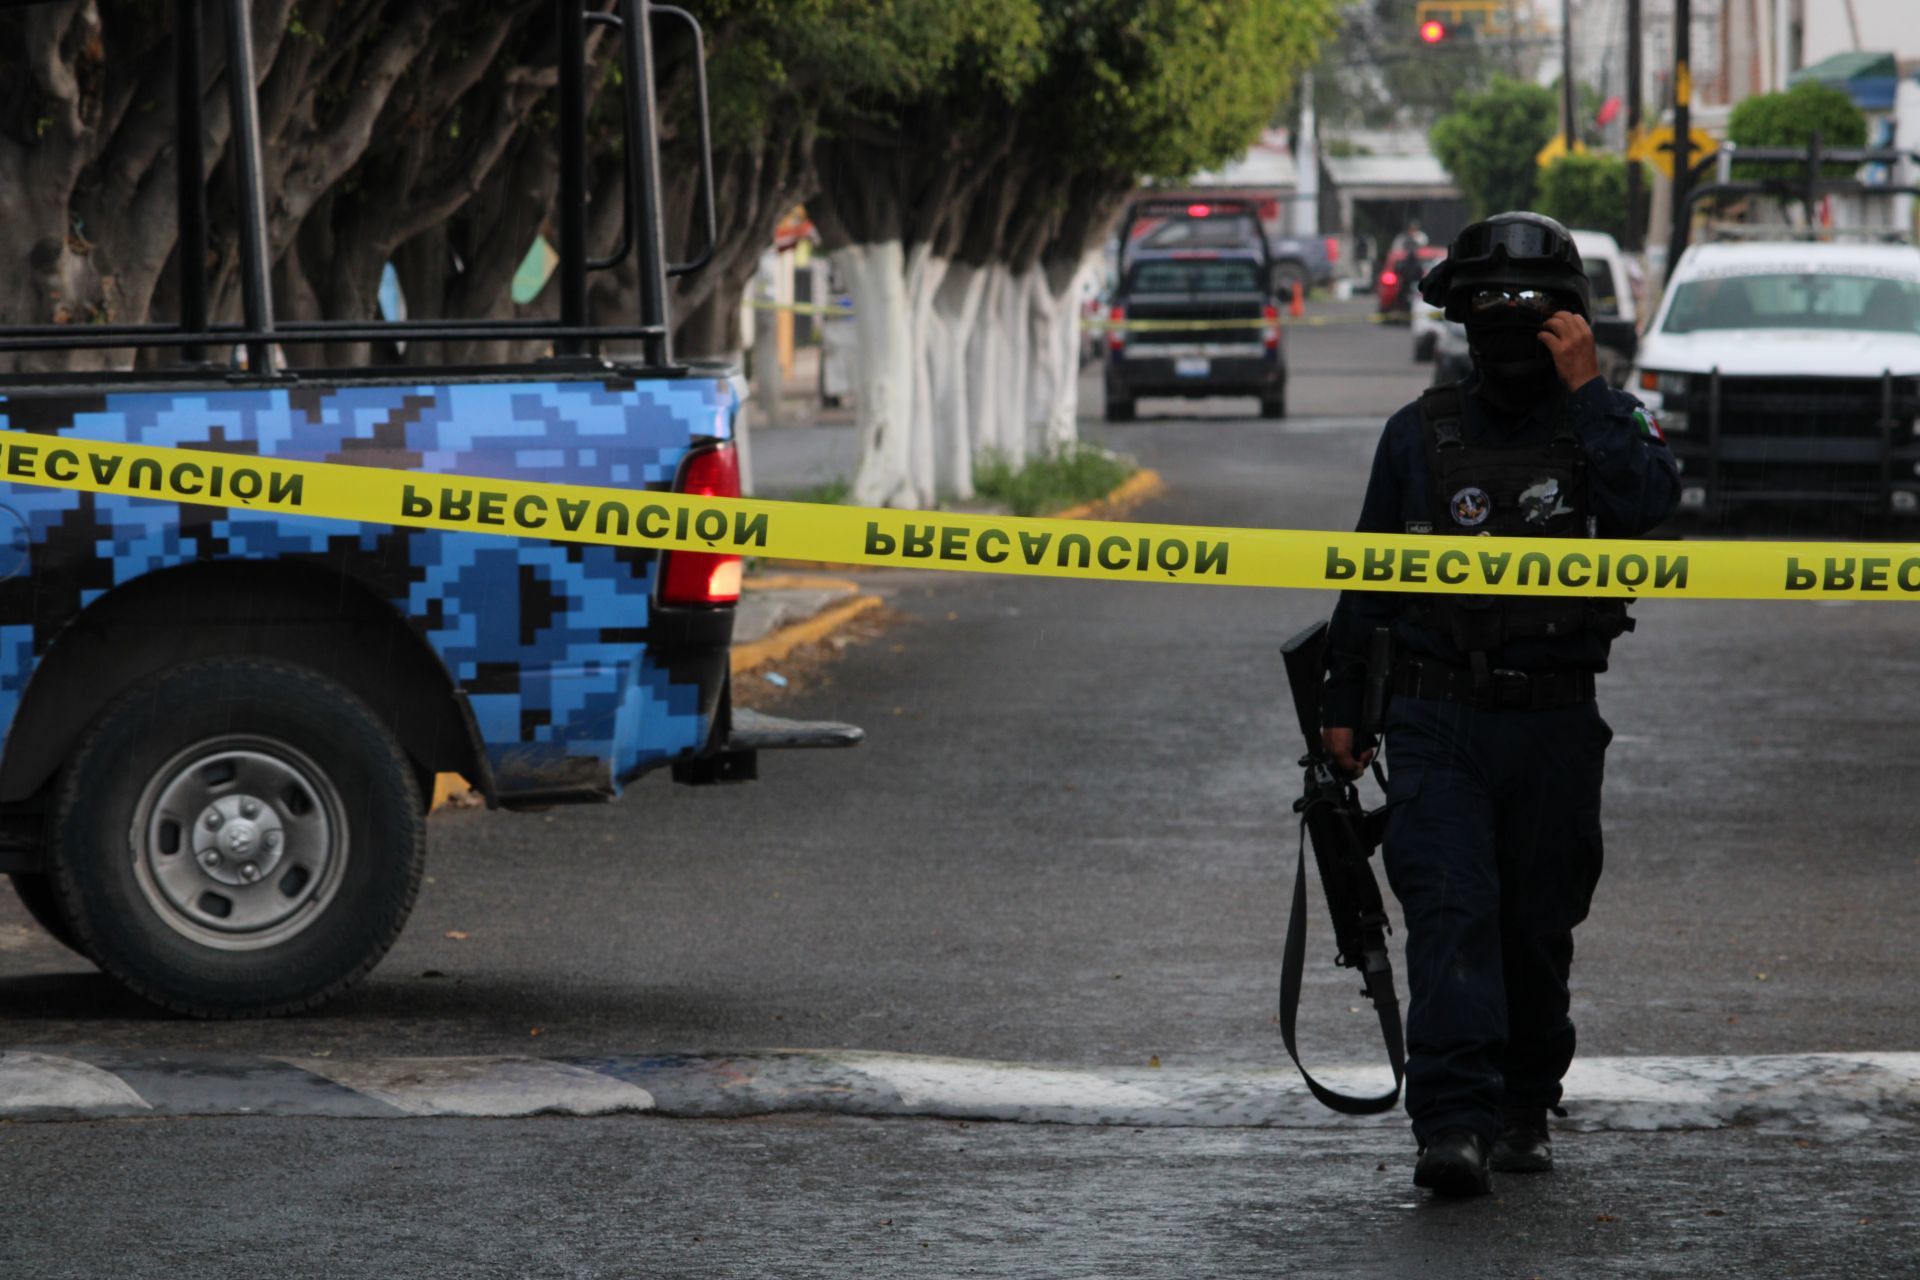 Guanajuato - Mueren policías en ataques en Guanajuato - Página 2 EUXHLHXOONBANIHDIIZ254GBXI